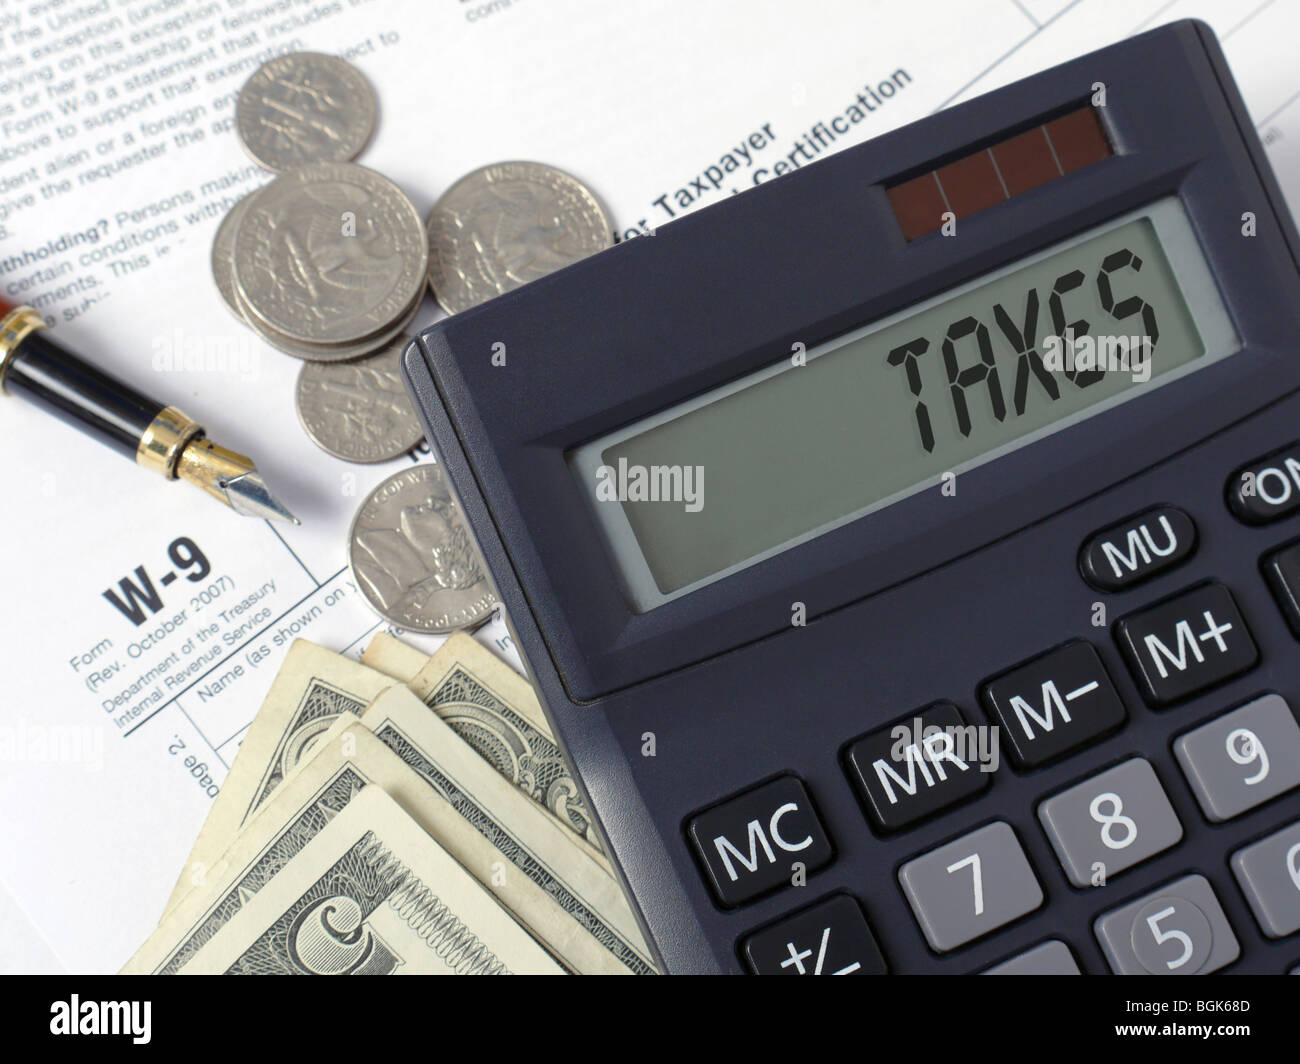 Taschenrechner mit lcd Anzeige steuern Wort mit Stift und US-Dollar auf w-9 Einkommensteuer Formen gelegt. Stockfoto